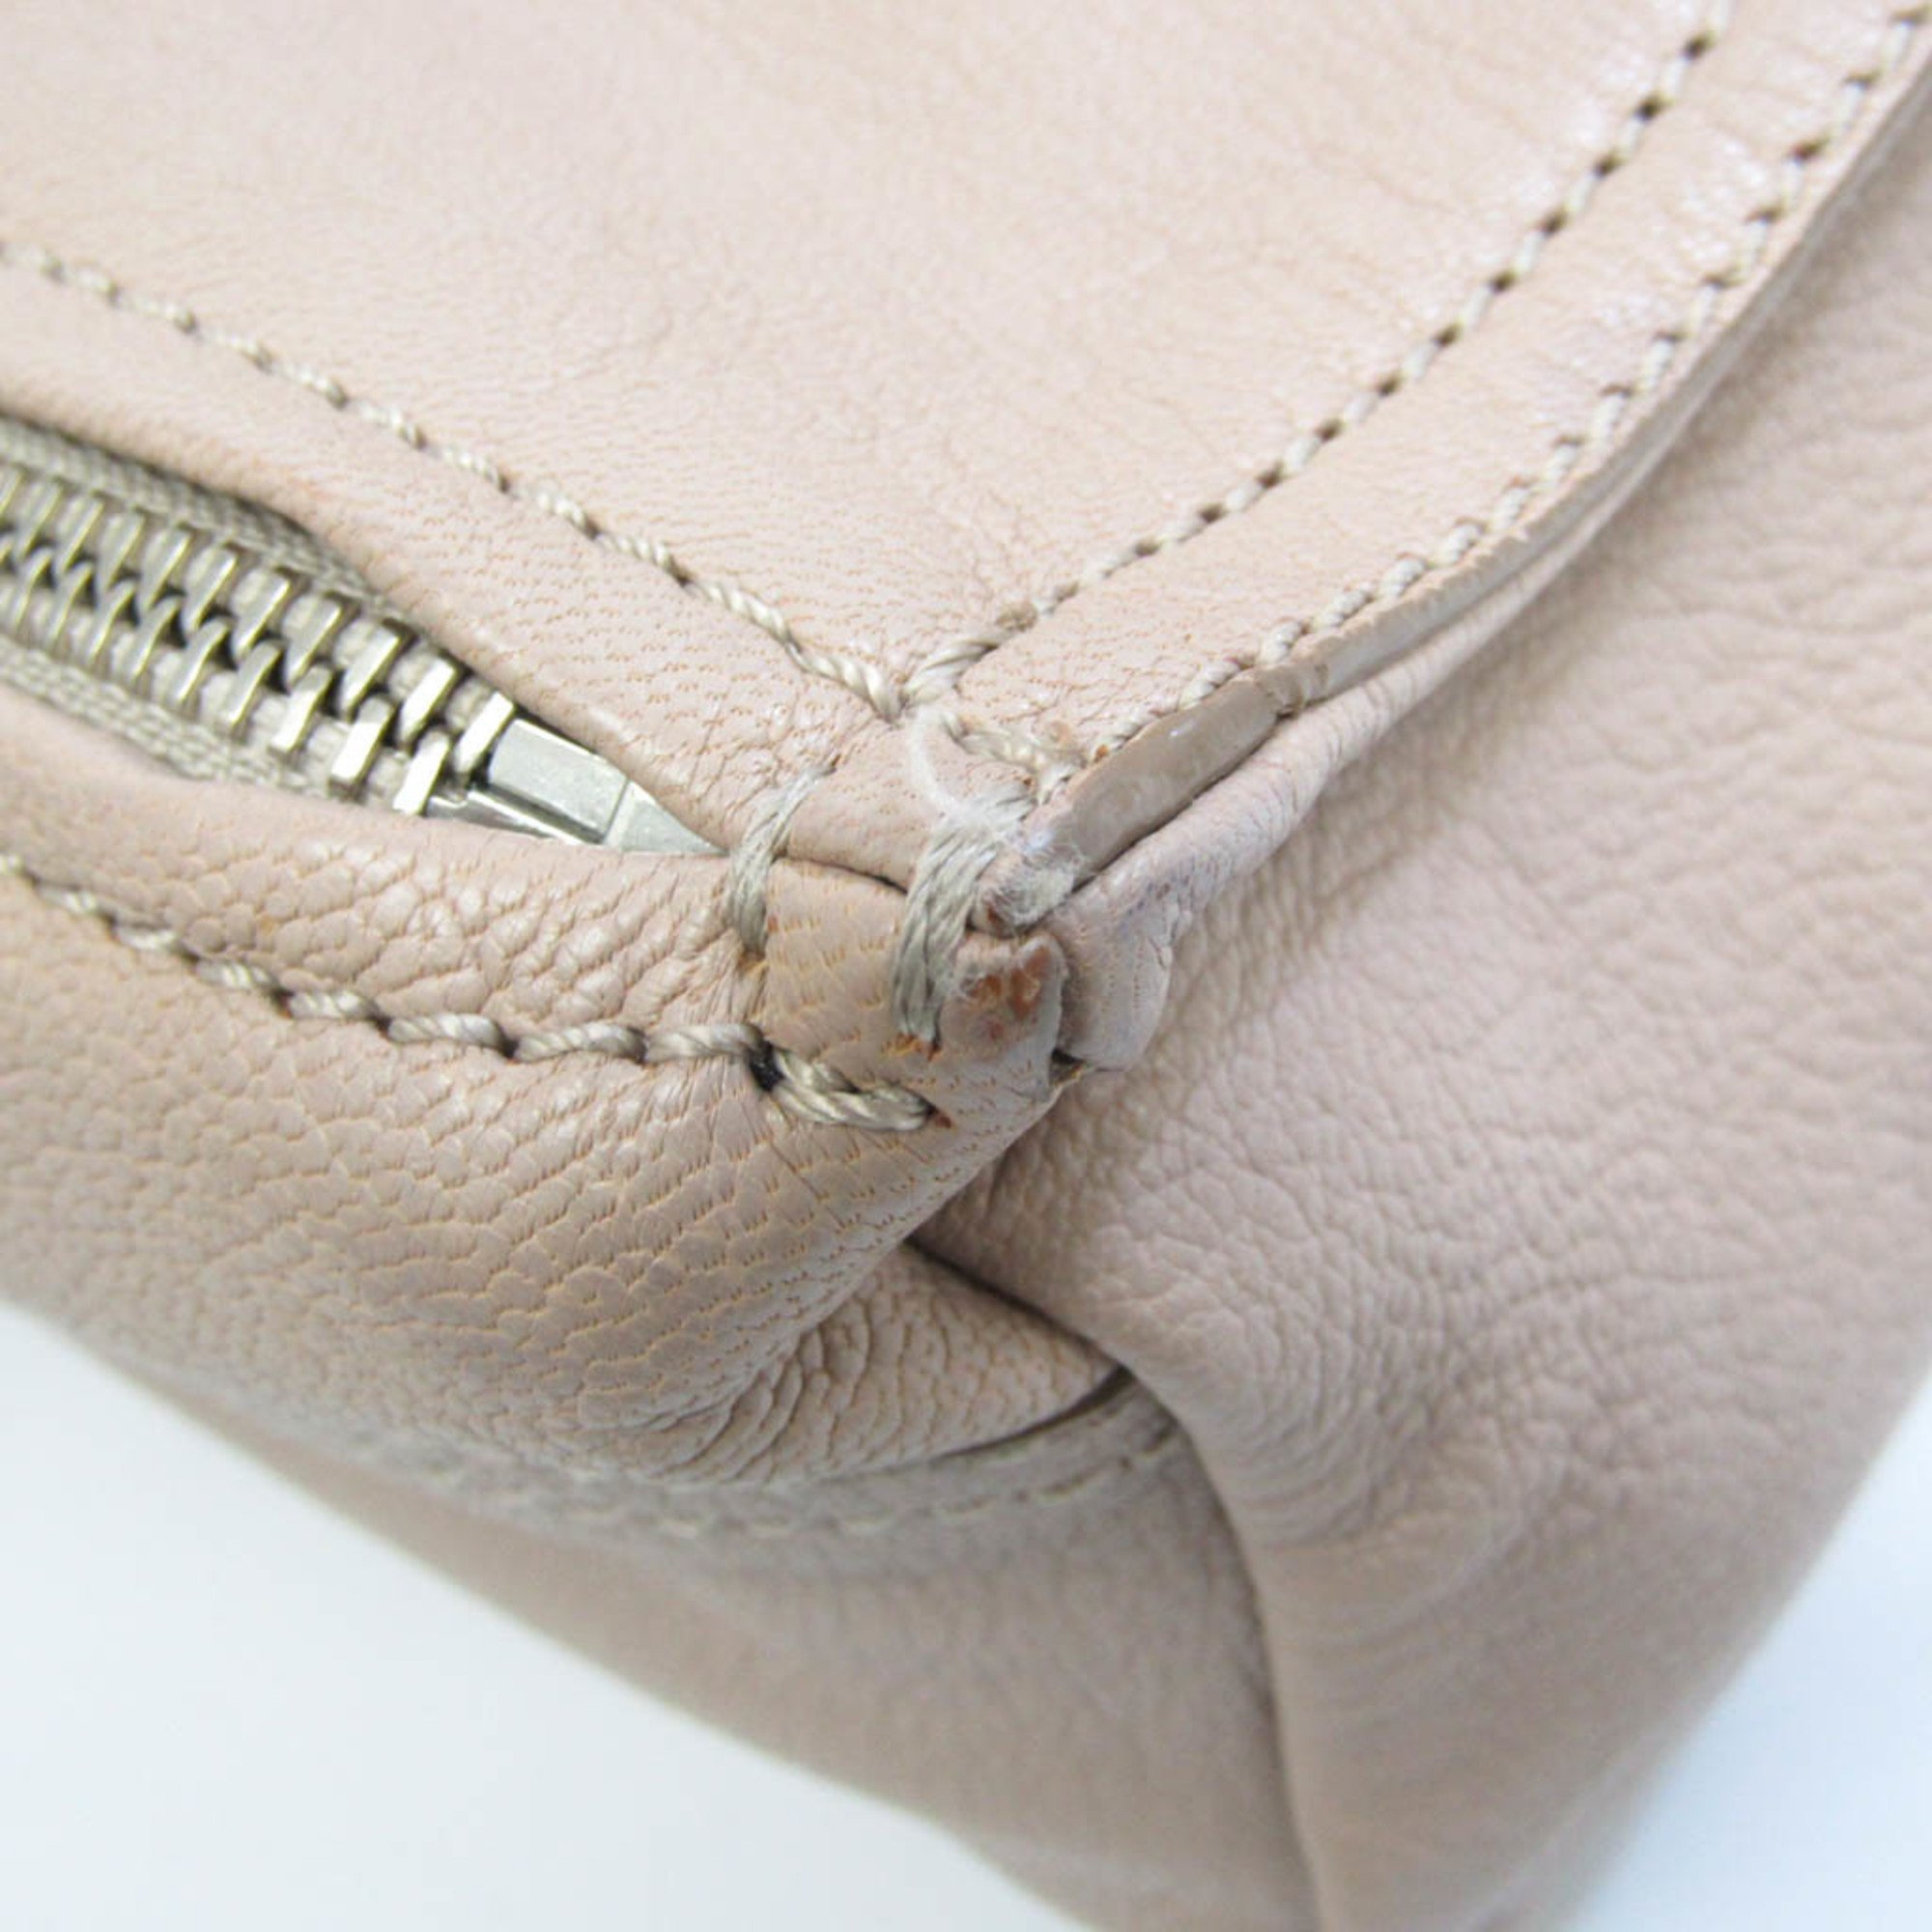 Givenchy Pandora Women's Leather Shoulder Bag Pink Beige